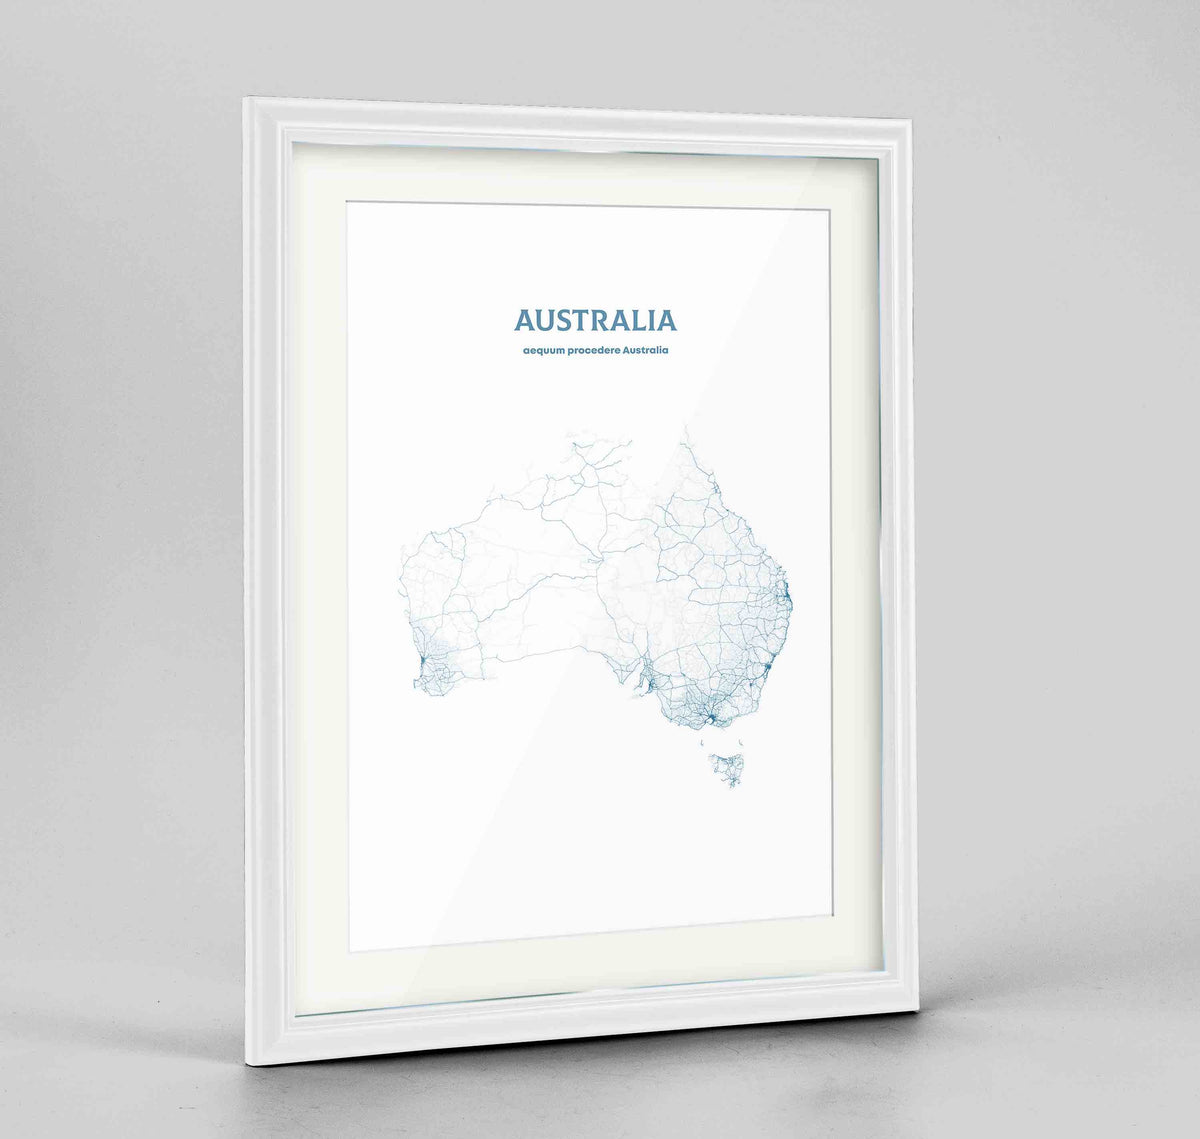 Australia - All Roads Art Print - Framed